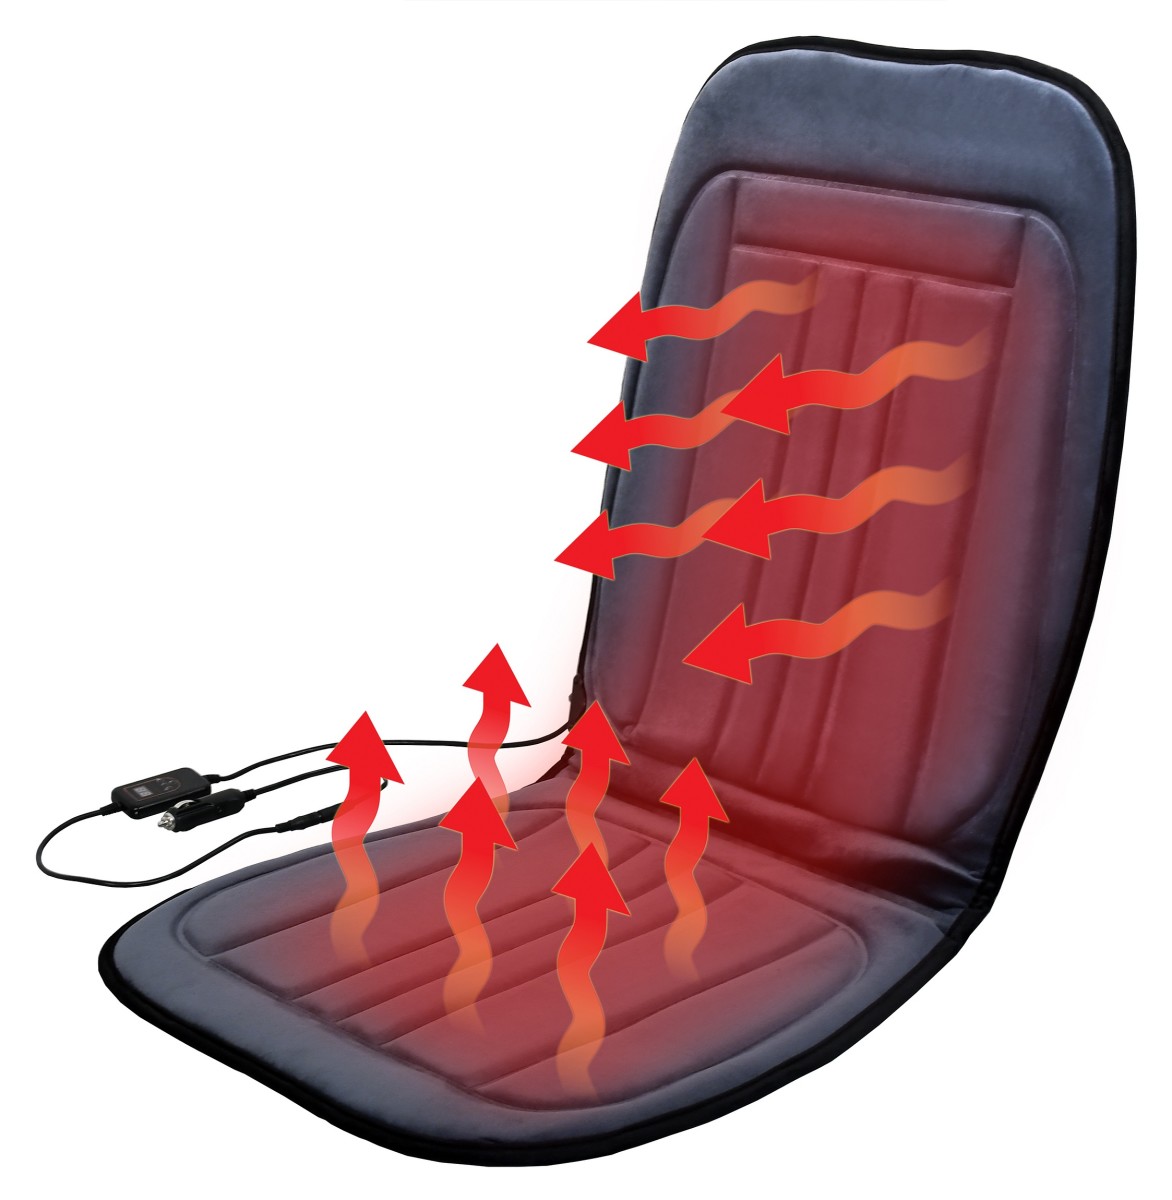 Vyhřívaný potah sedadla s termostatem 12 V